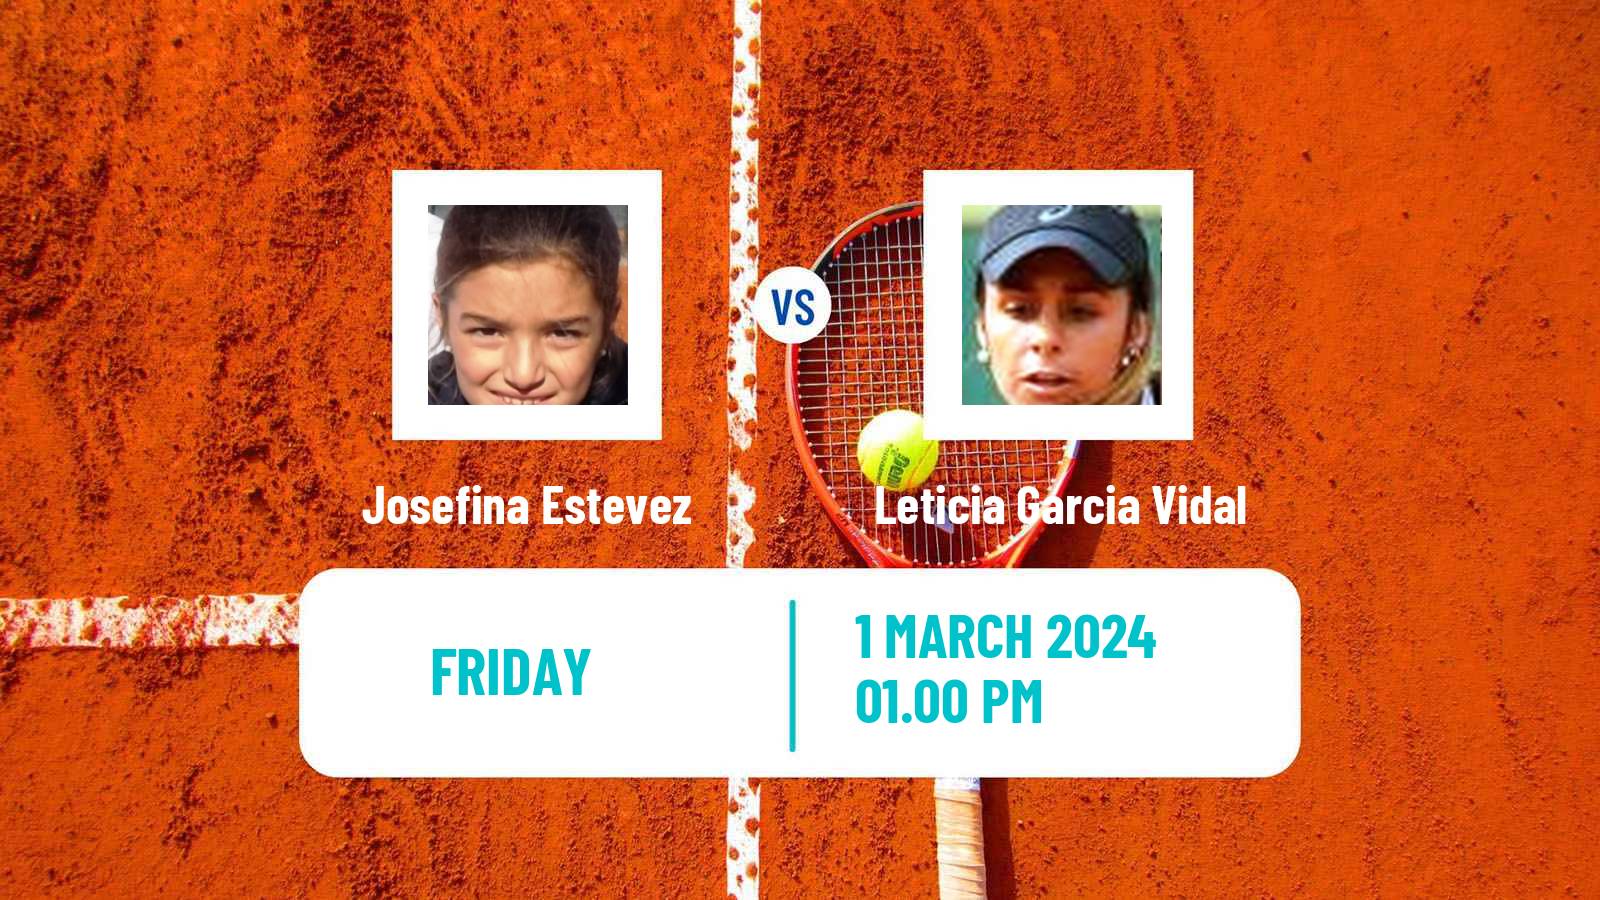 Tennis ITF W15 Tucuman Women Josefina Estevez - Leticia Garcia Vidal